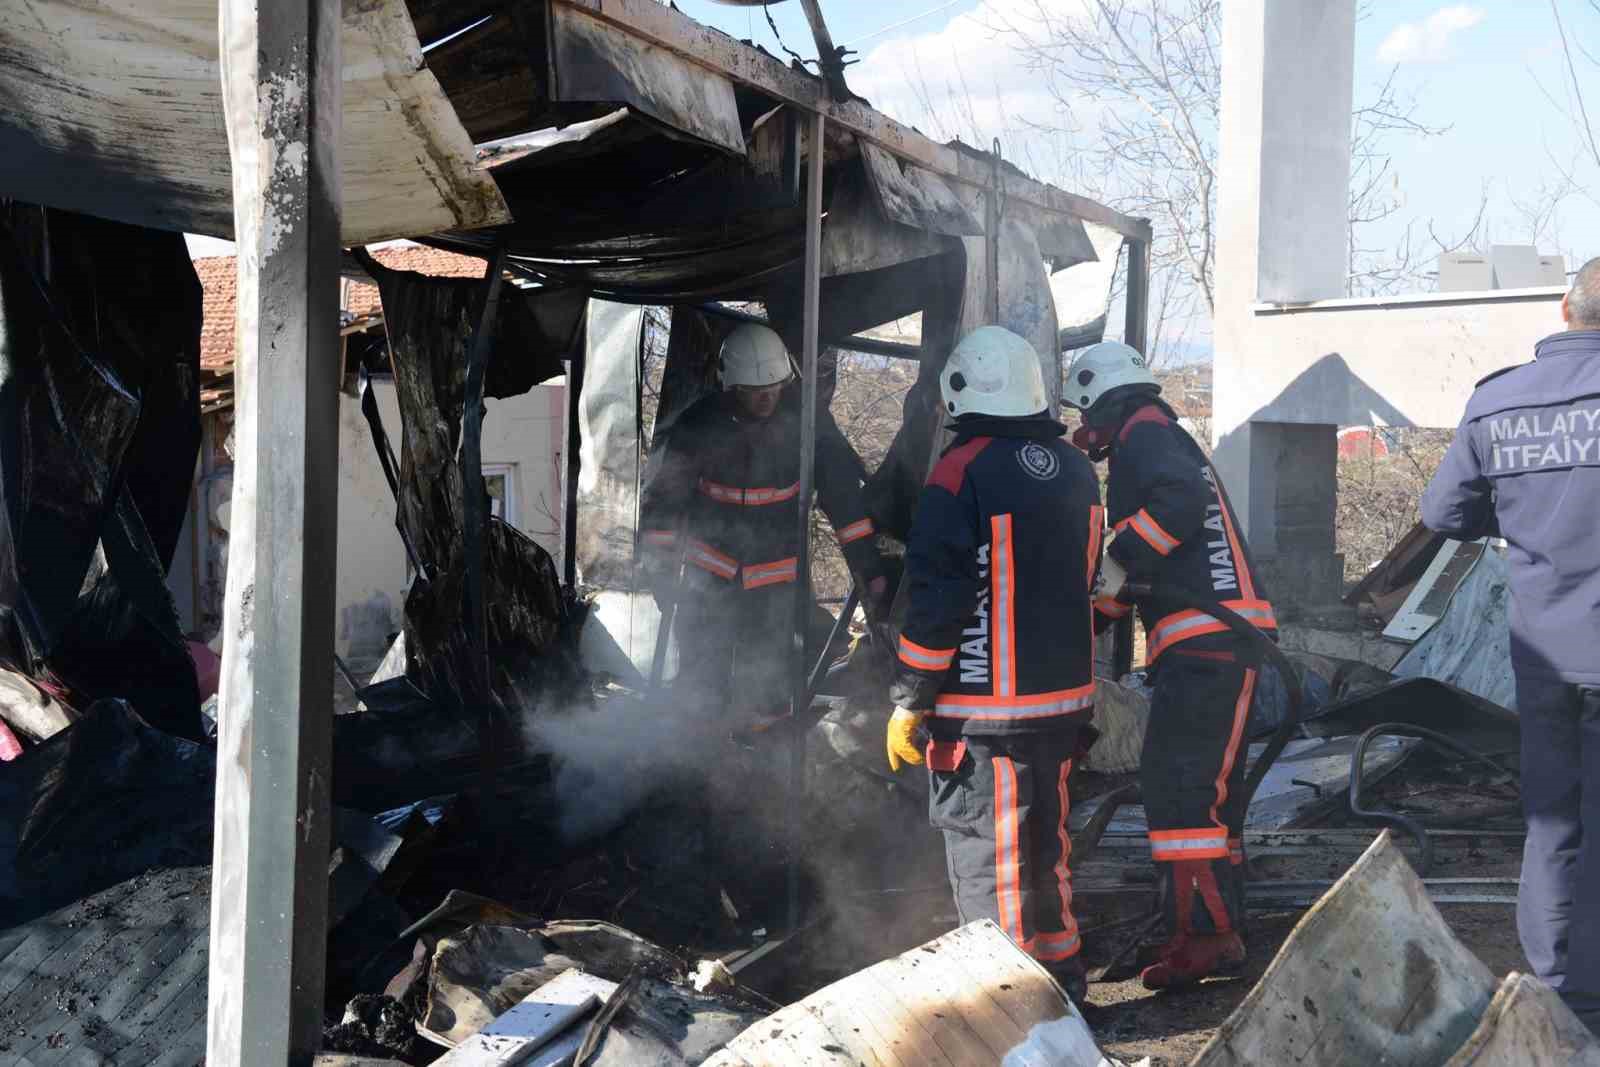 Malatya’da konteyner yangınında 1 yaşındaki bebek yaralandı